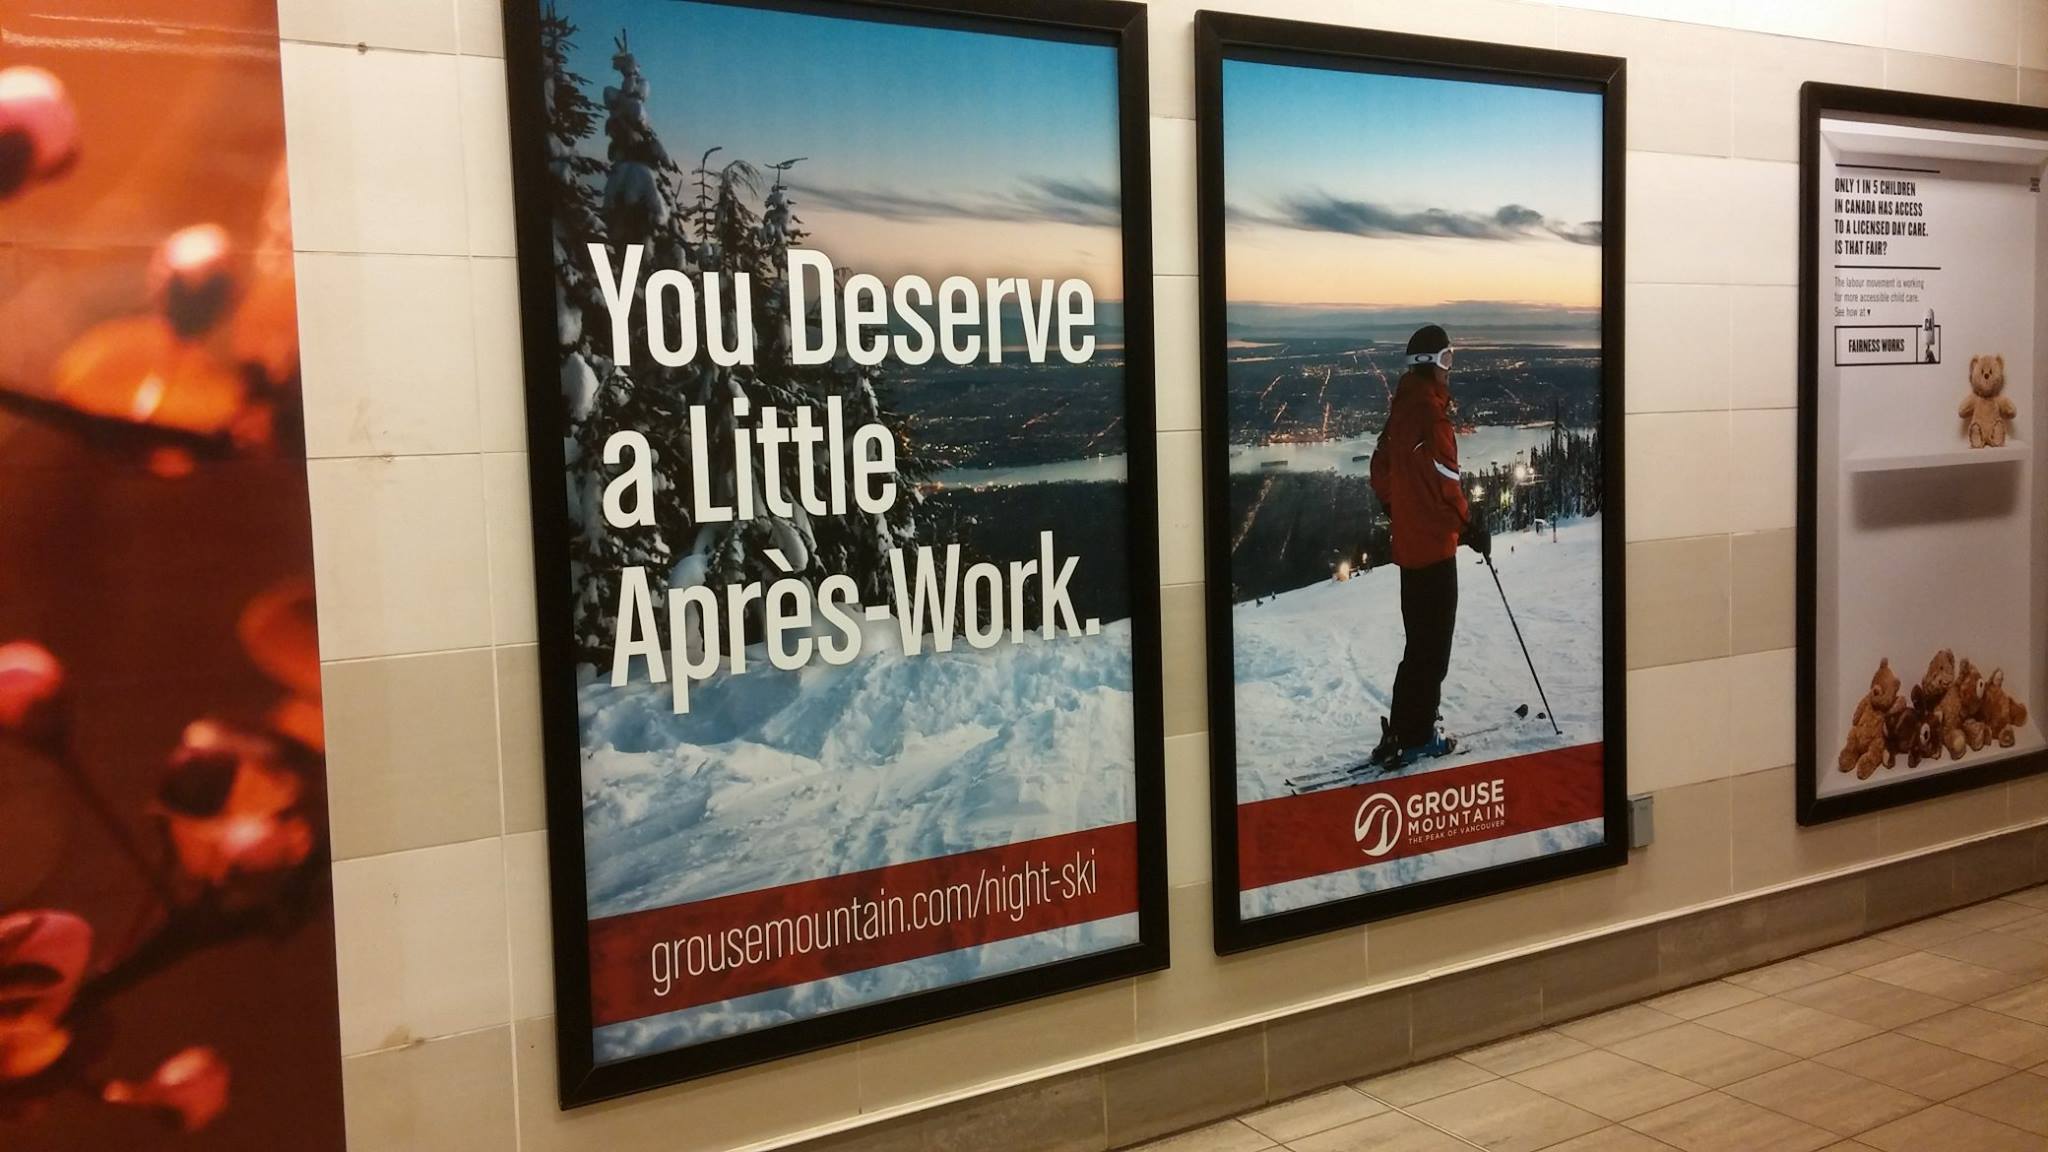 Un anuncio para esquiar, diciendo: “Te mereces un poco de après-work”.